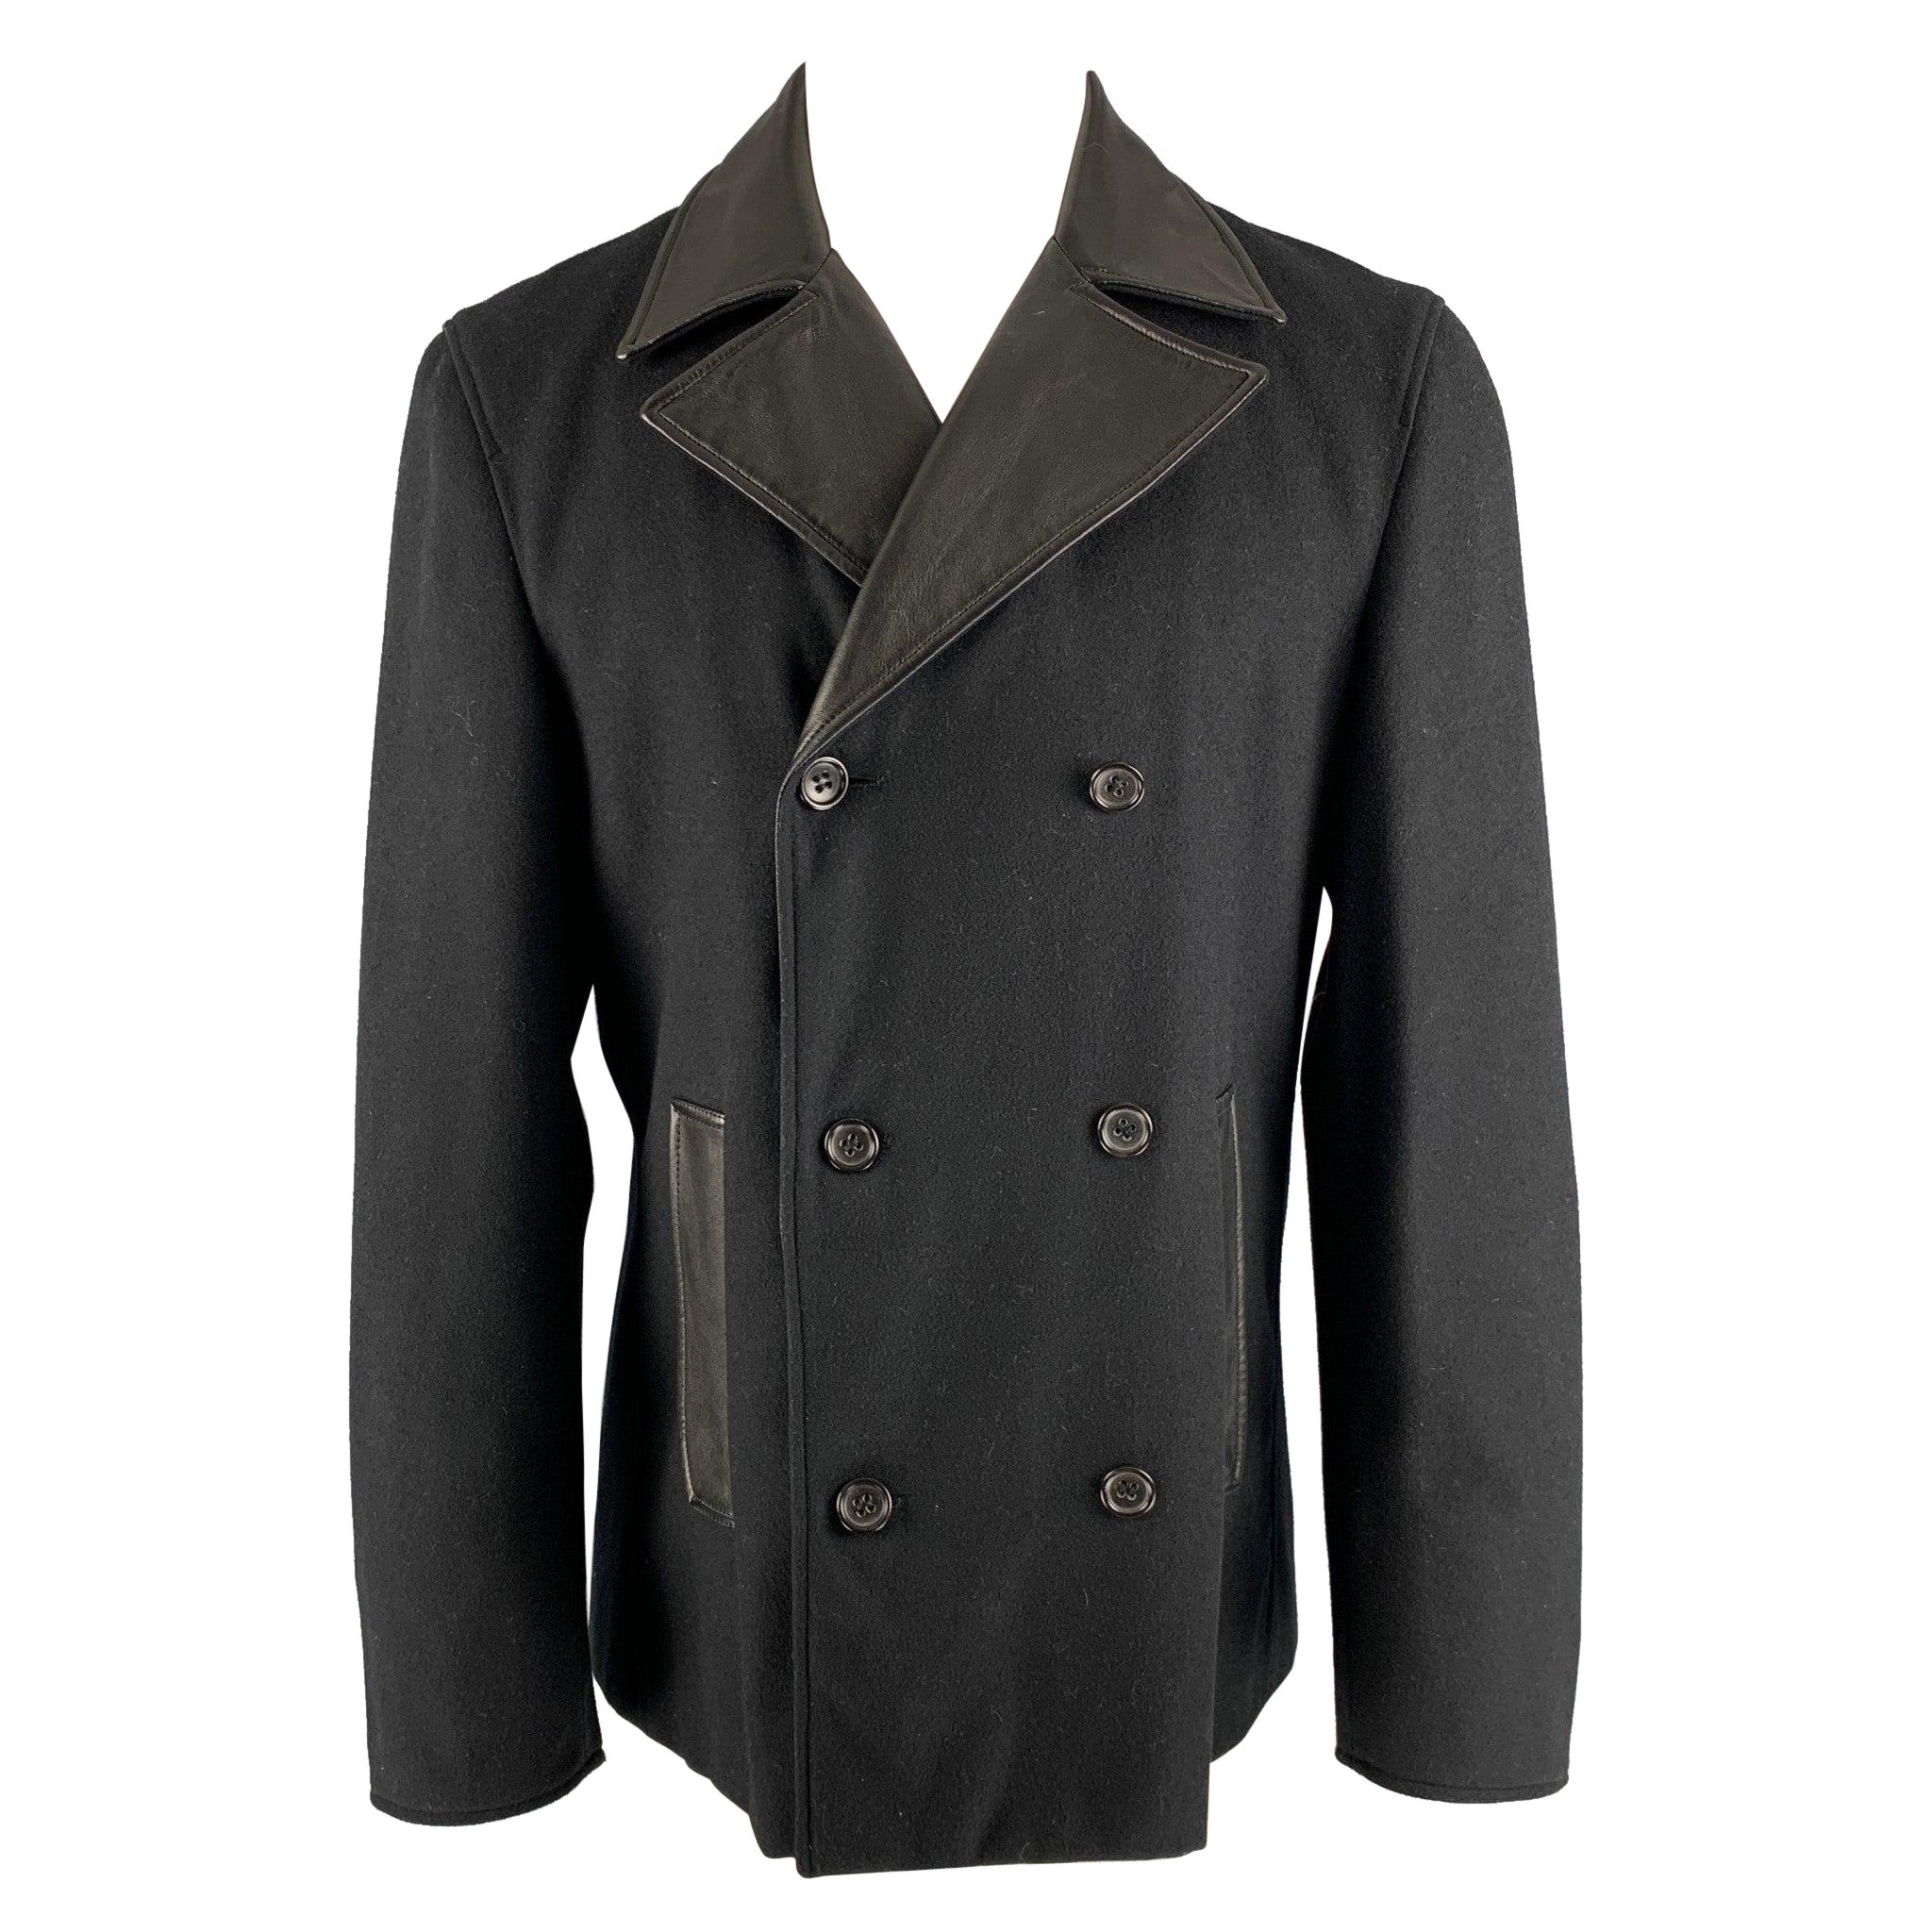 JIL SANDER Size 40 Black Solid Wool Blend Peacoat Coat For Sale